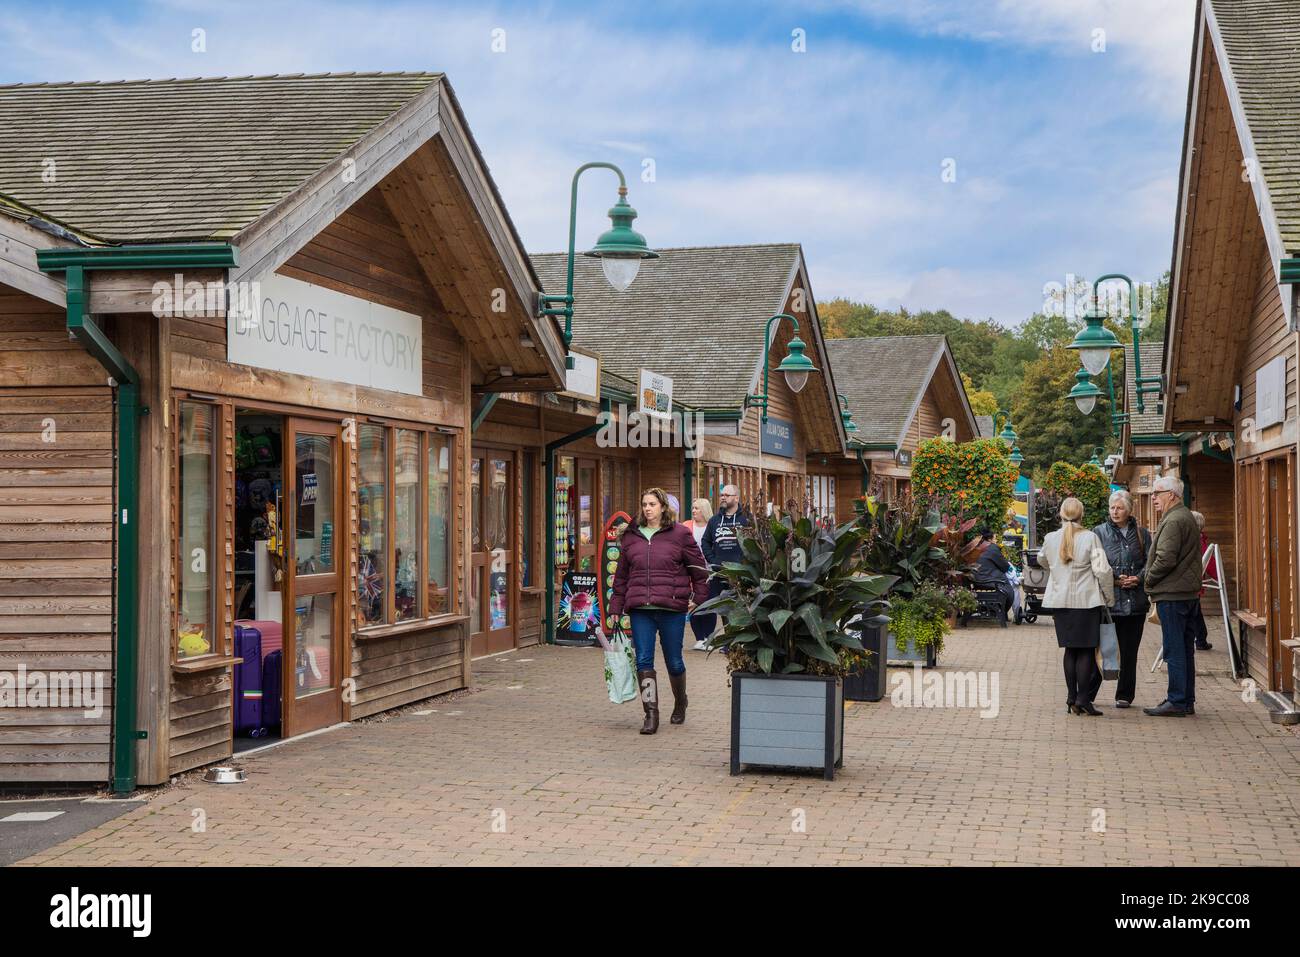 Trentham Shopping Village, Stoke-on-Trent, Staffordshire, England, UK Stock Photo